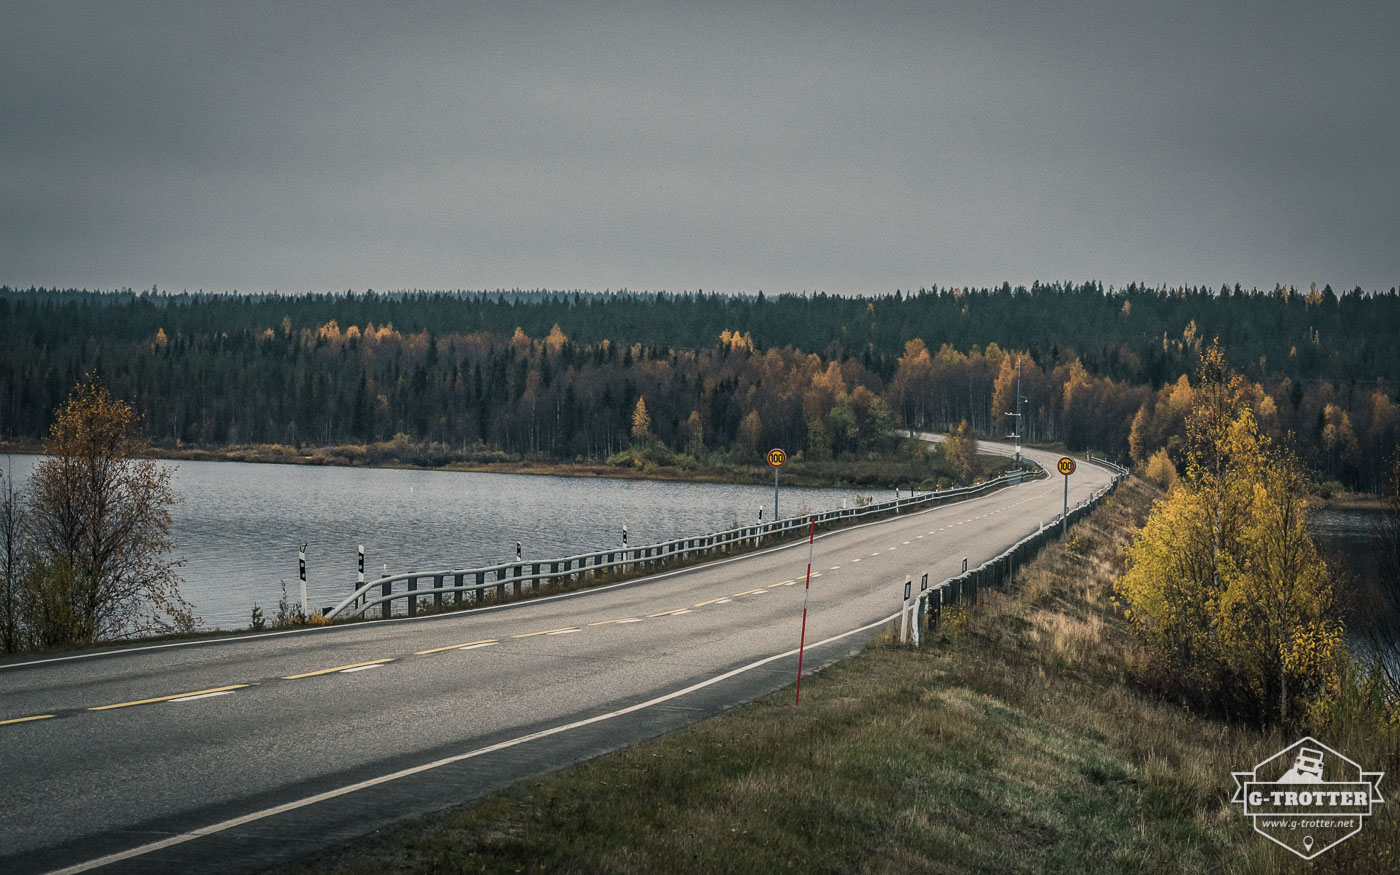 Bild 9 der Bildergalerie “Straßen von Finnland”